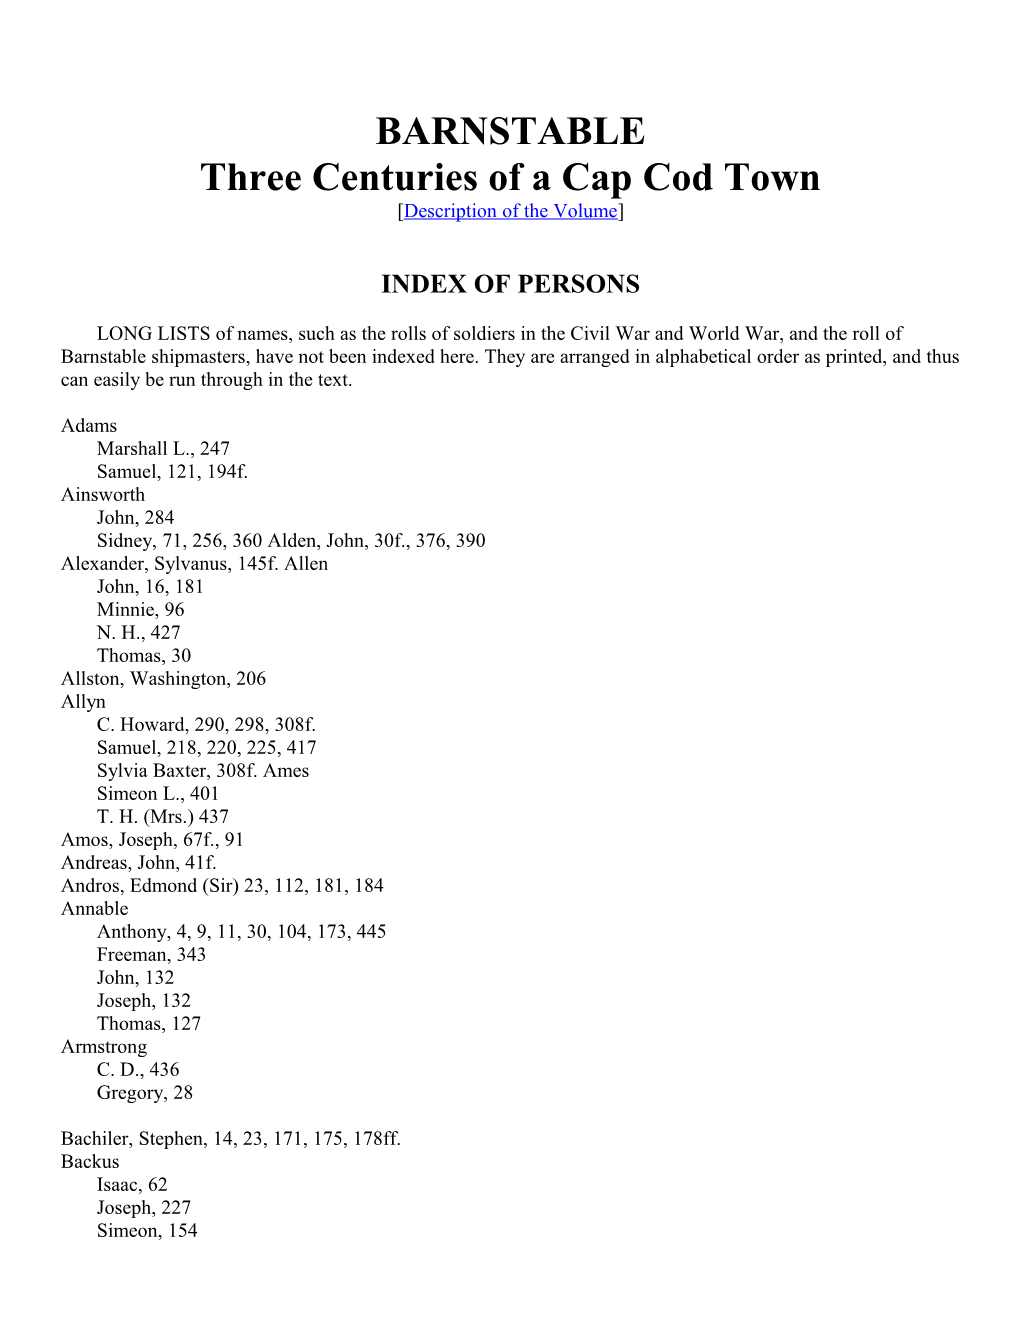 Three Centuries of a Cap Cod Town